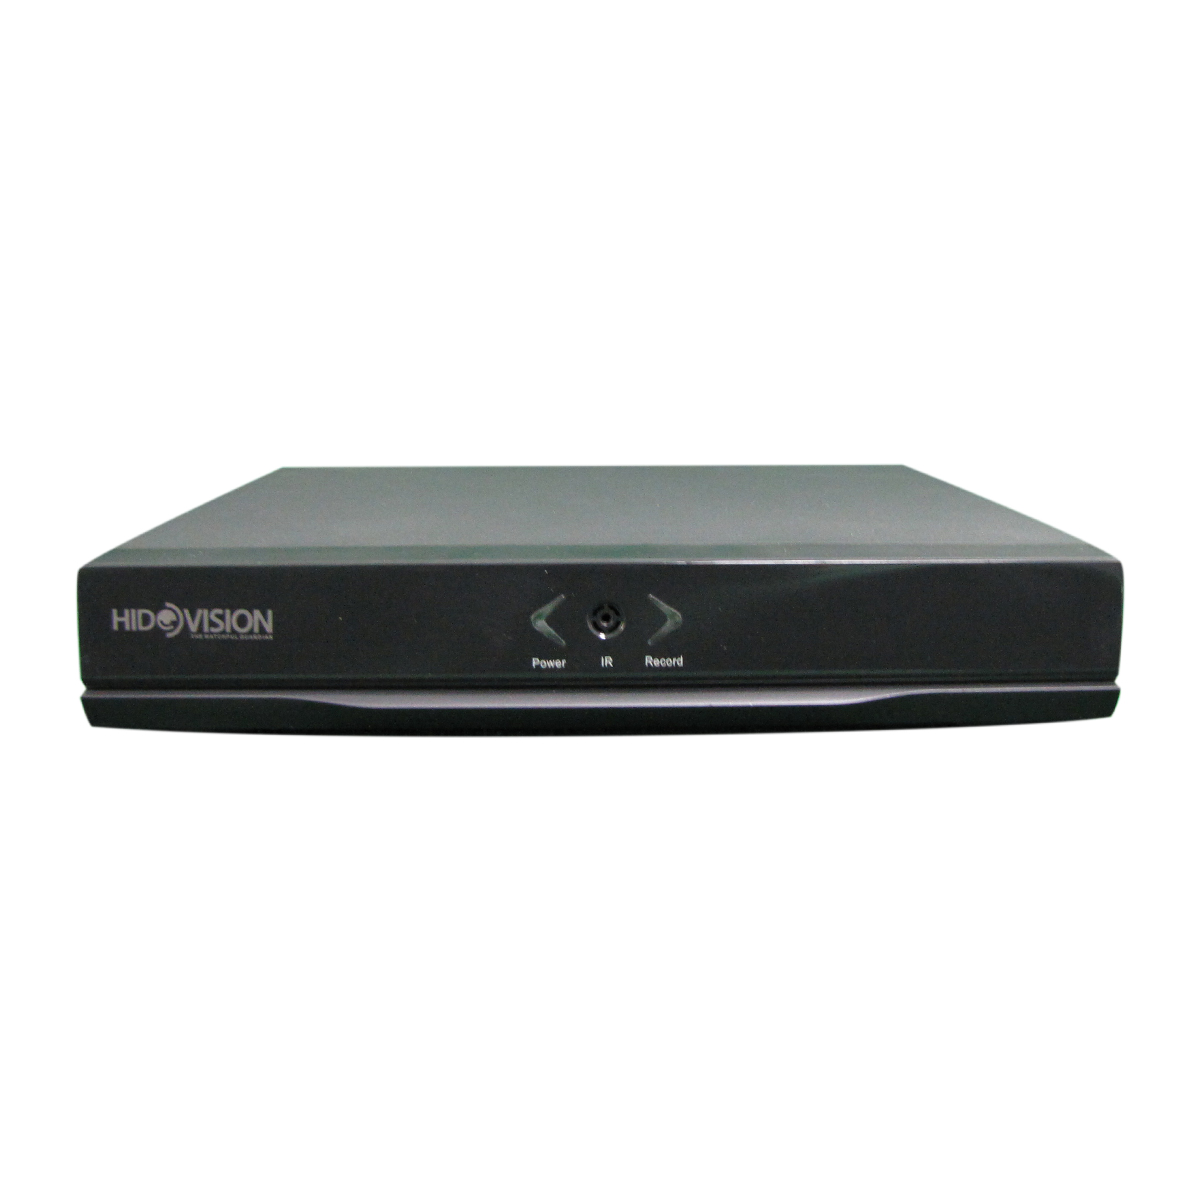 ضبط کننده ویدیویی هایدويژن مدل 1108LN